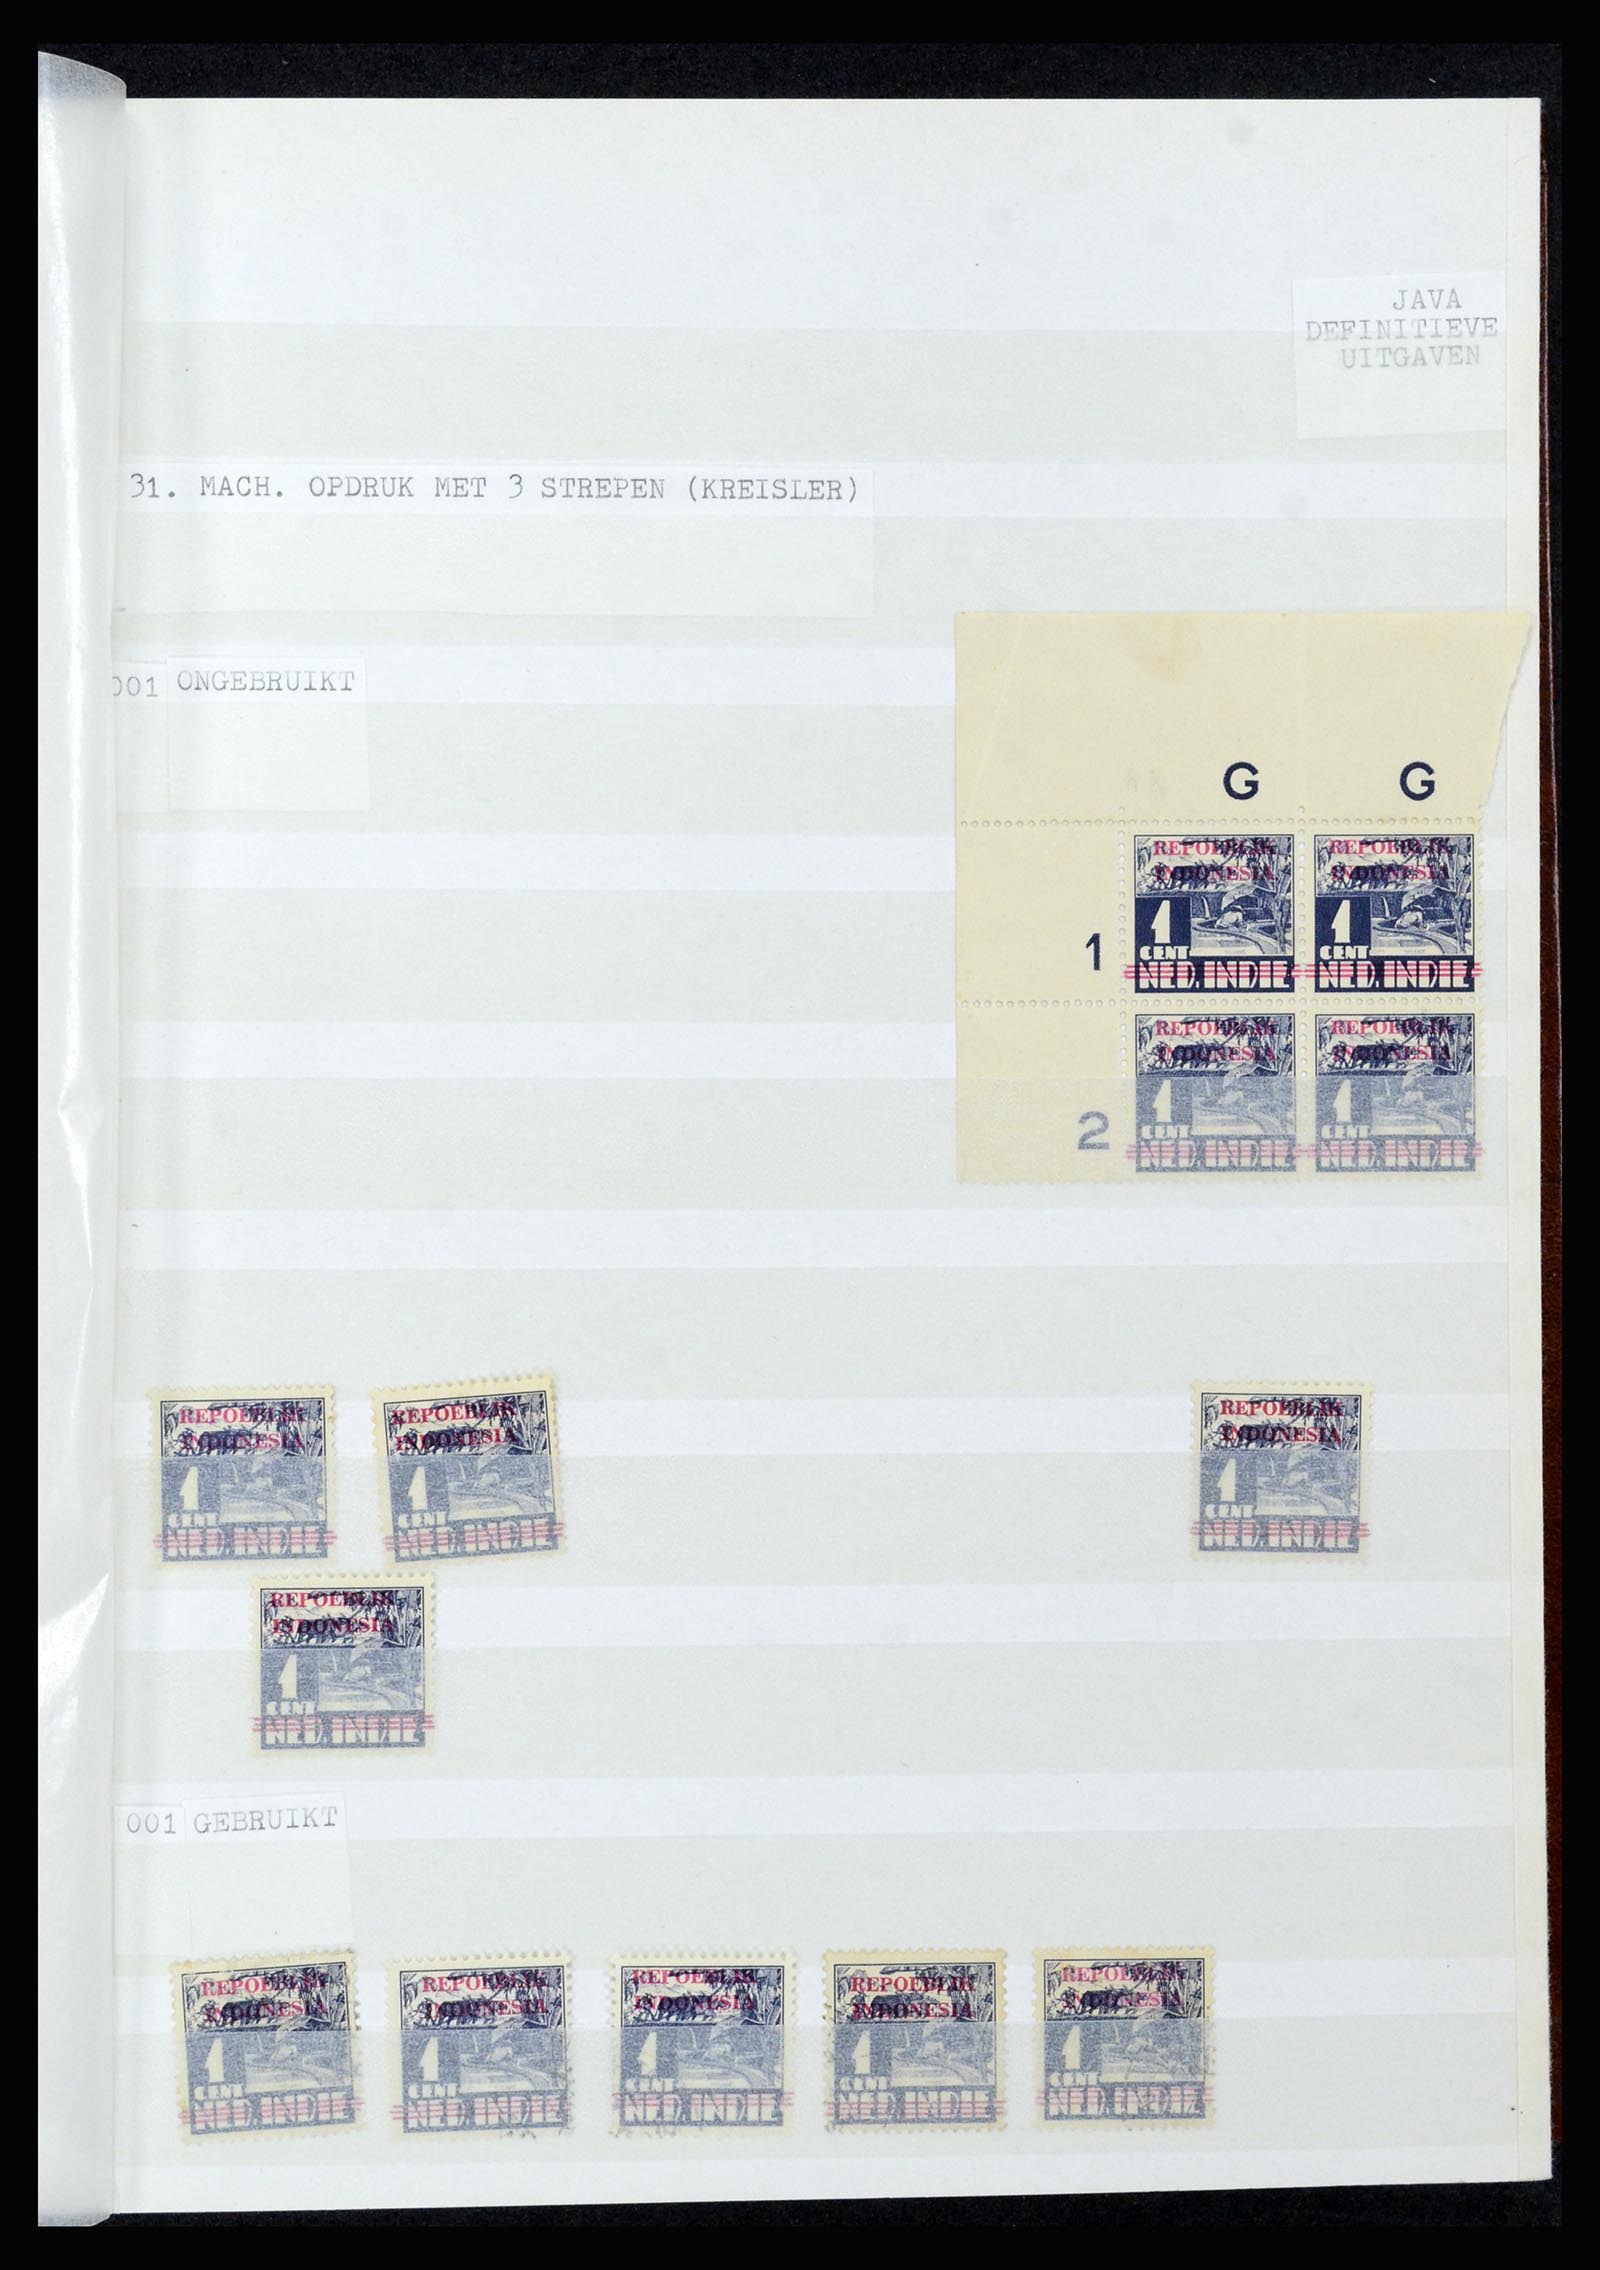 36742 295 - Stamp collection 36742 Dutch Indies interim period 1945-1949.